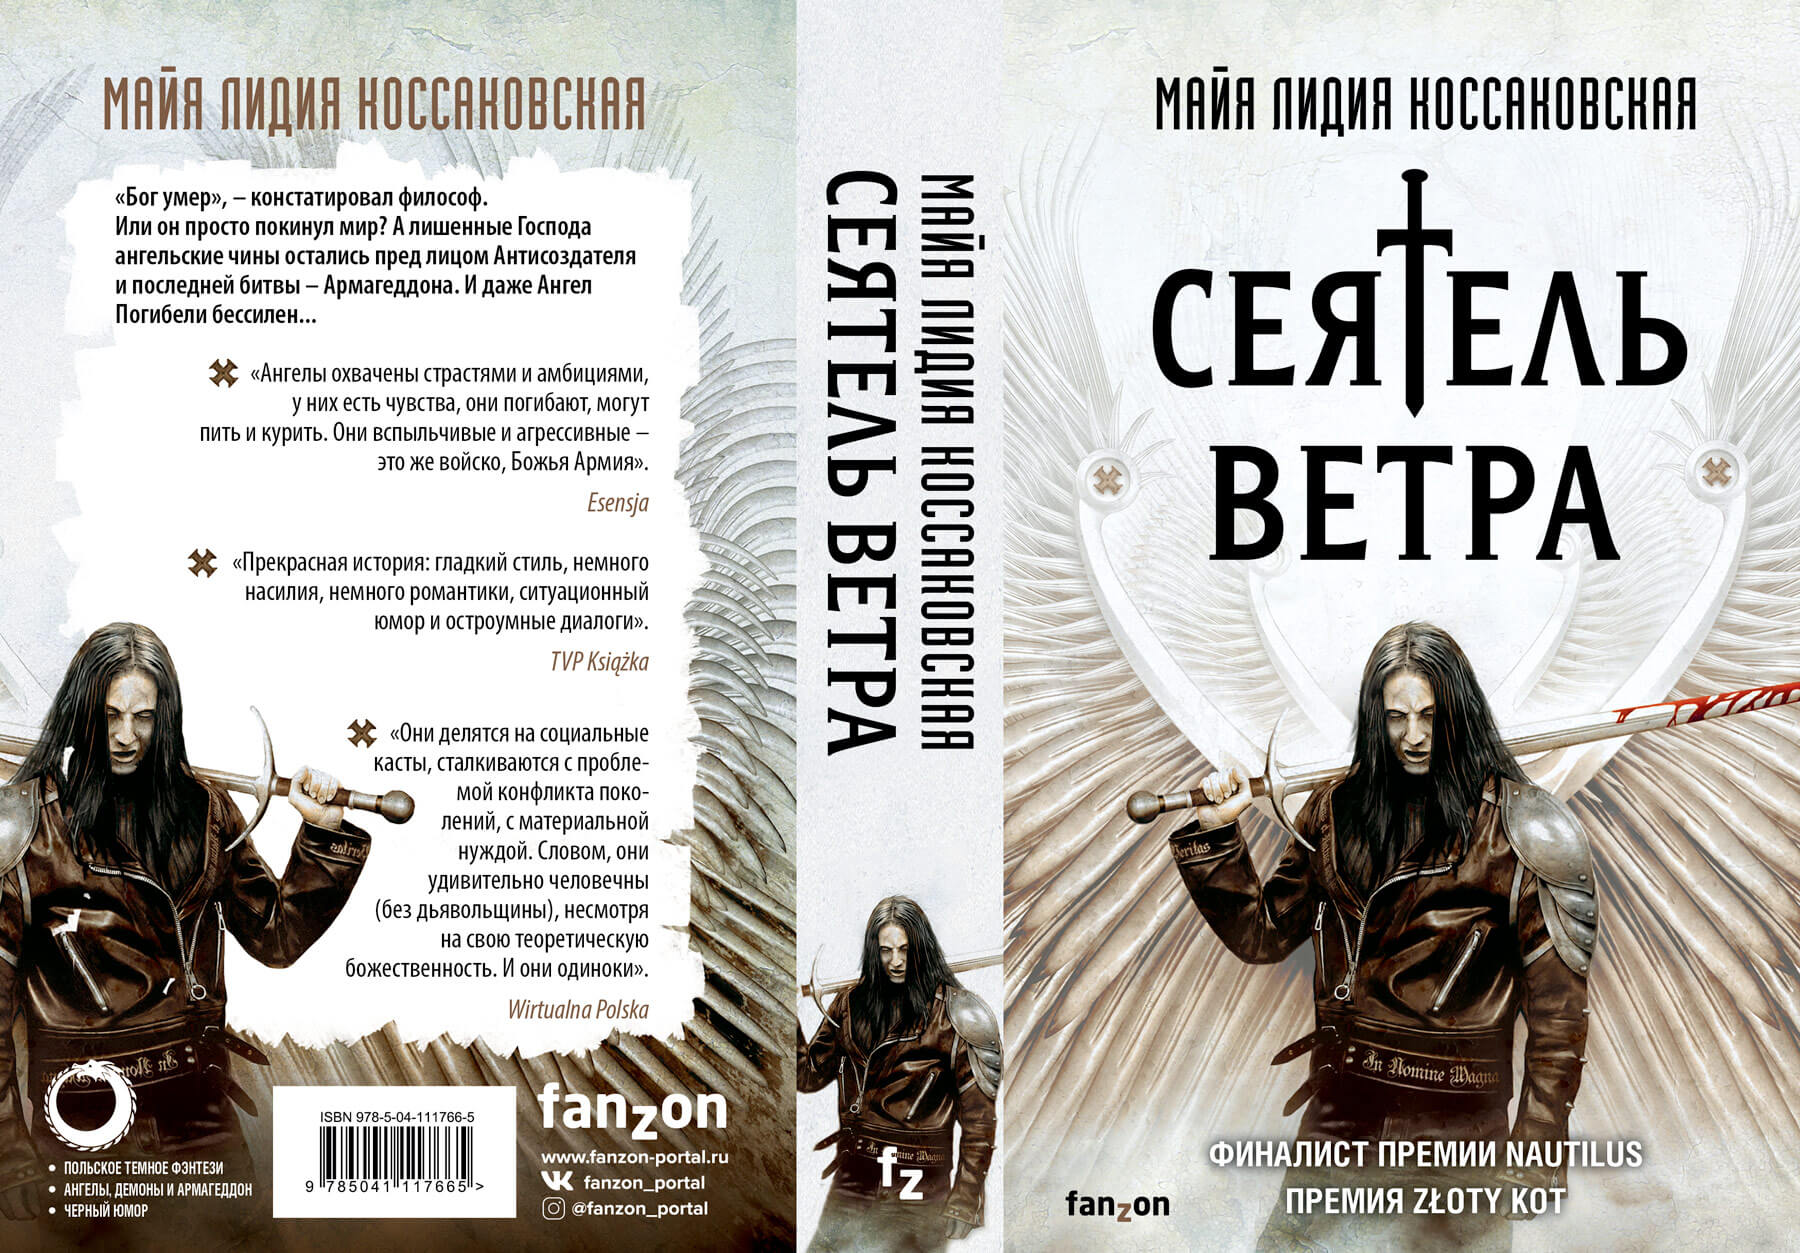 Пример адаптированной обложки, когда российские издатели купили только иллюстрацию, а дизайн шрифтов и цветовые решения разработали уже сами / Fanzon